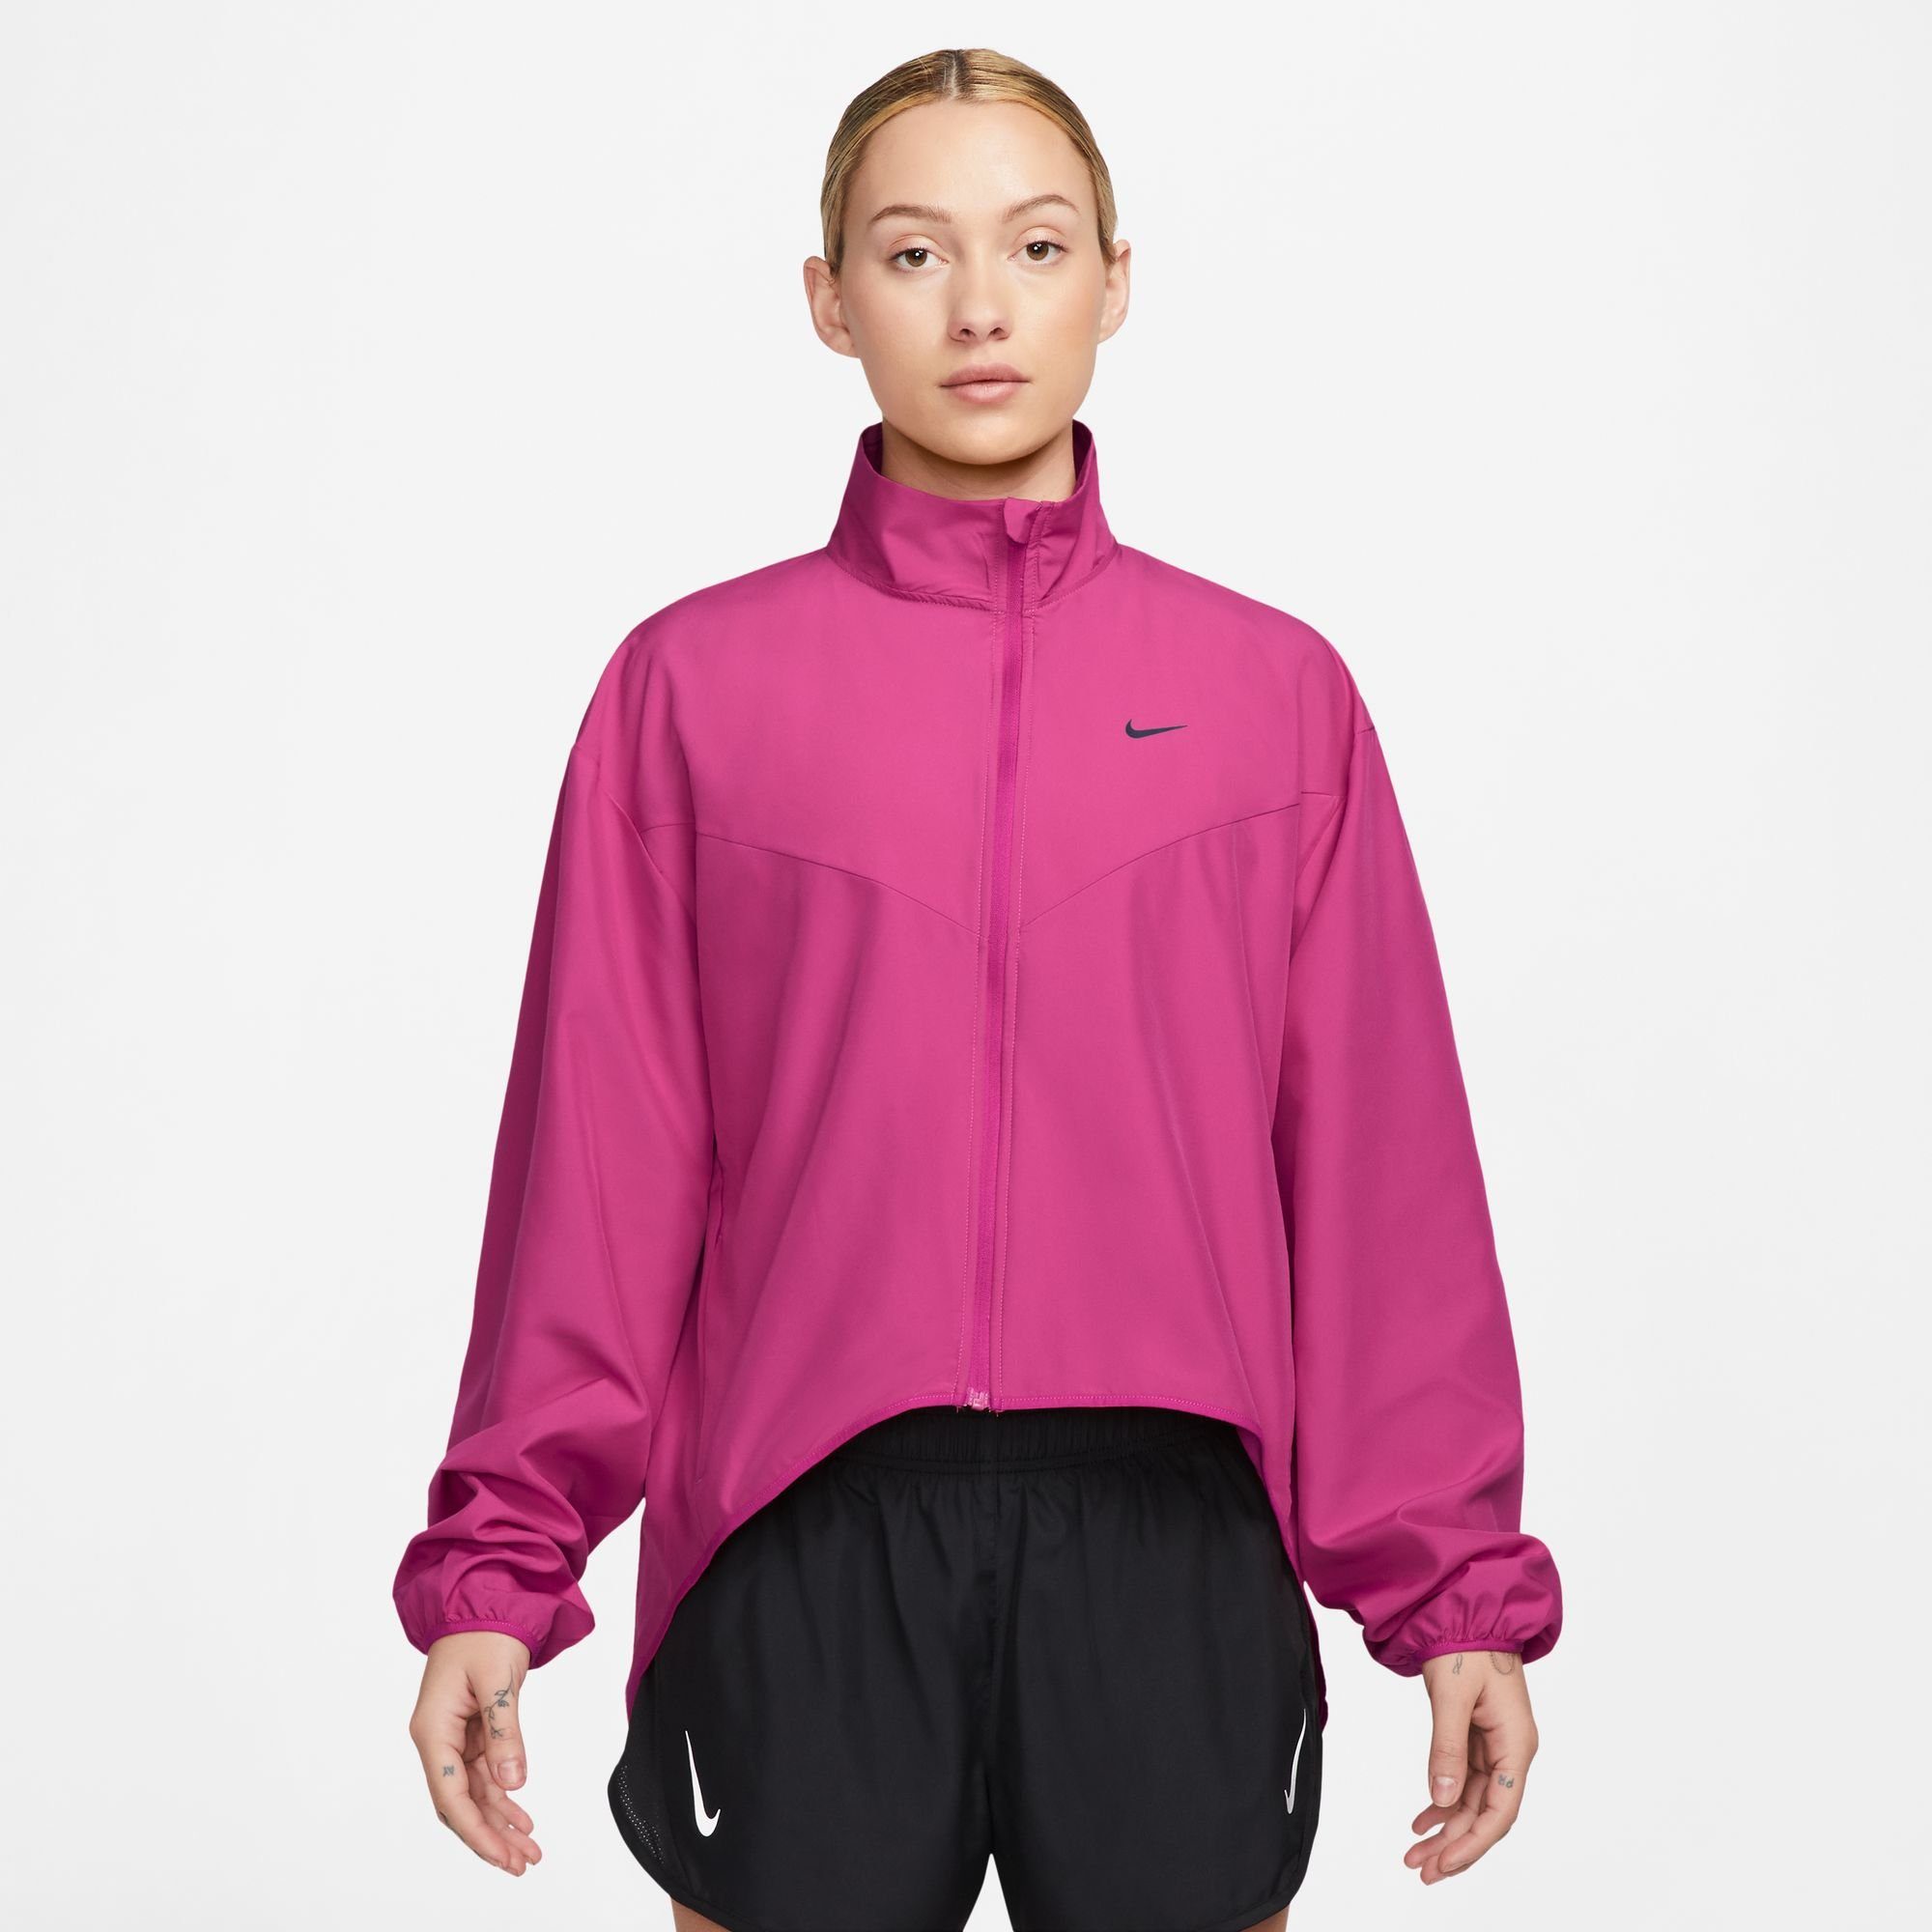 [Sieht elegant aus] Nike Laufjacke DRI-FIT WOMEN'S FIREBERRY/PURPLE INK SWOOSH JACKET